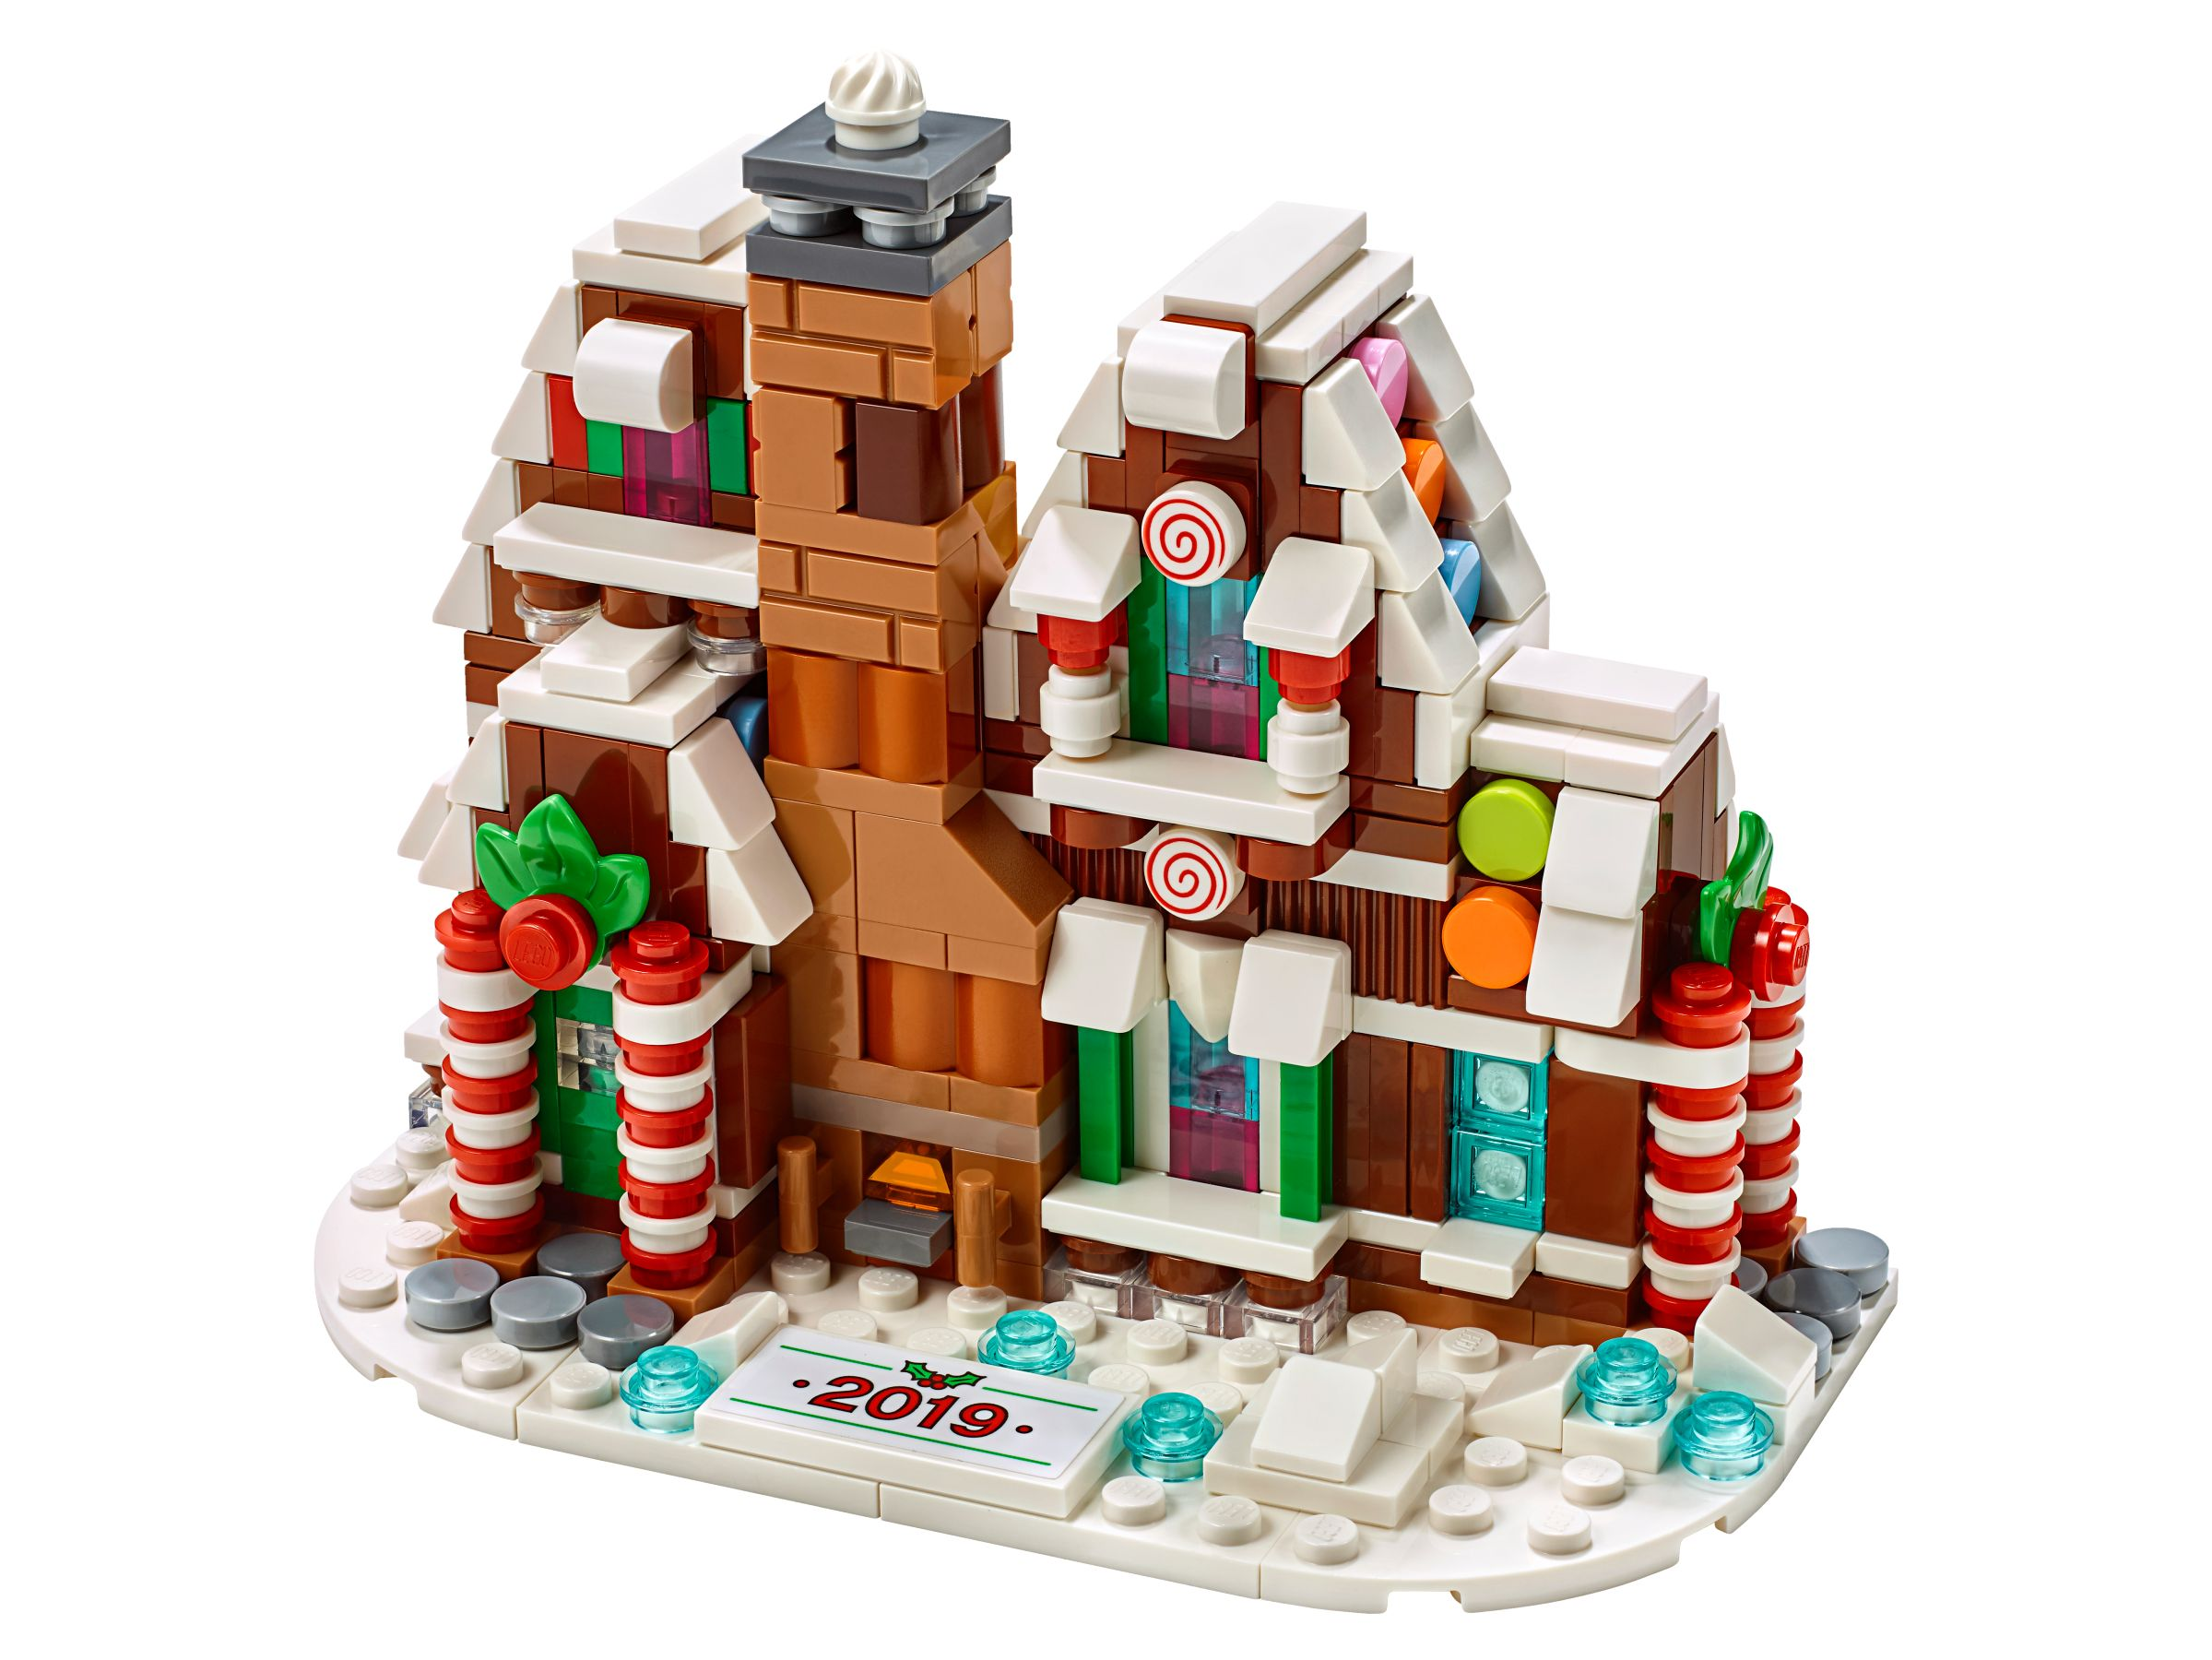 Bausatz Winter 40337 Weihnachten Gingerbreadhouse LEGO Lebkuchenhaus